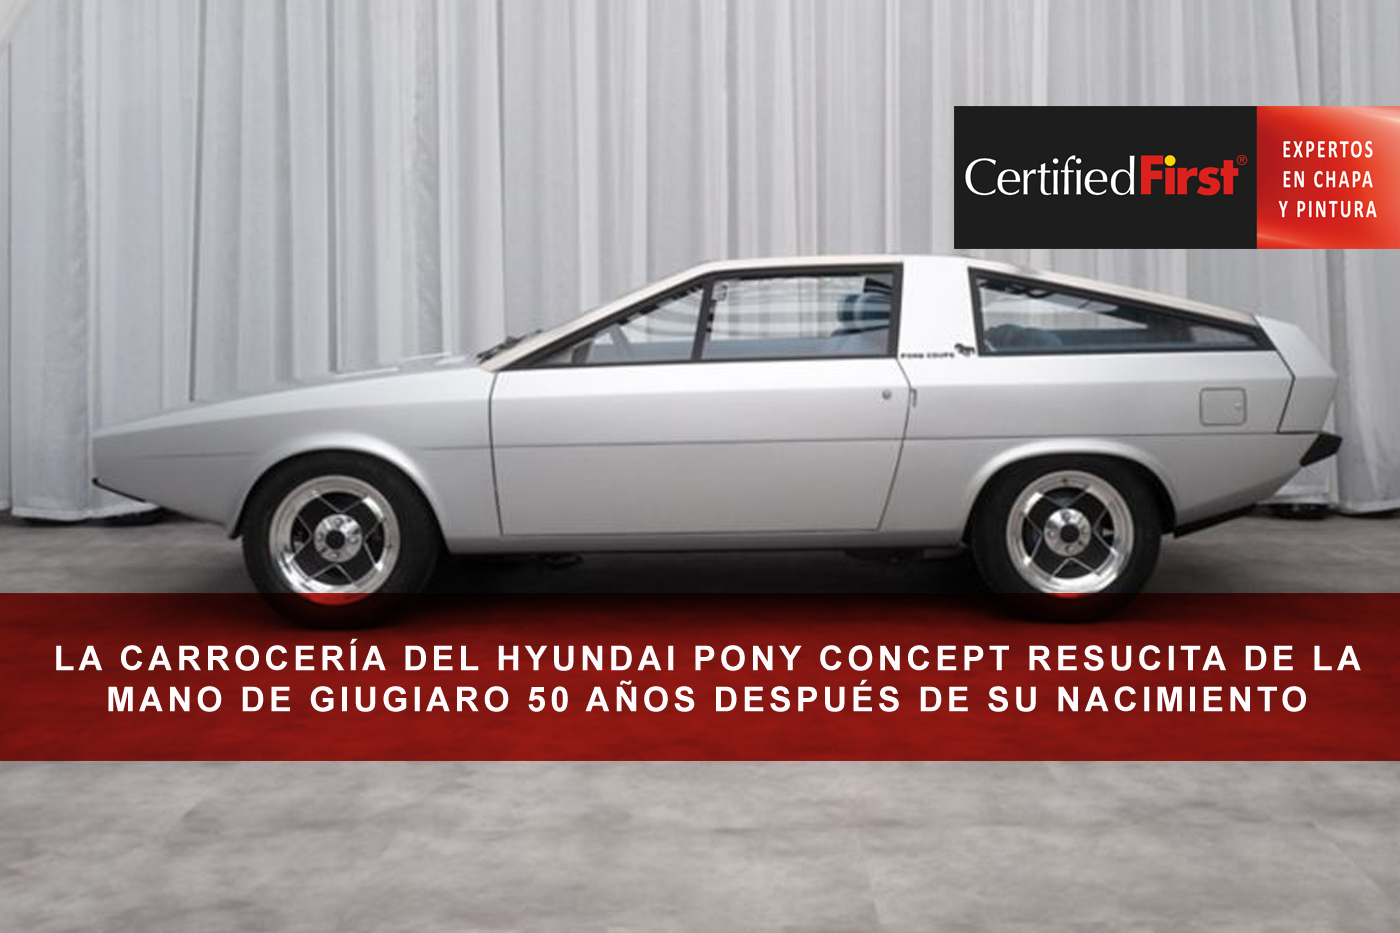 La carrocería del Hyundai pony concept resucita de la mano de Giugiaro 50 años después de su nacimiento